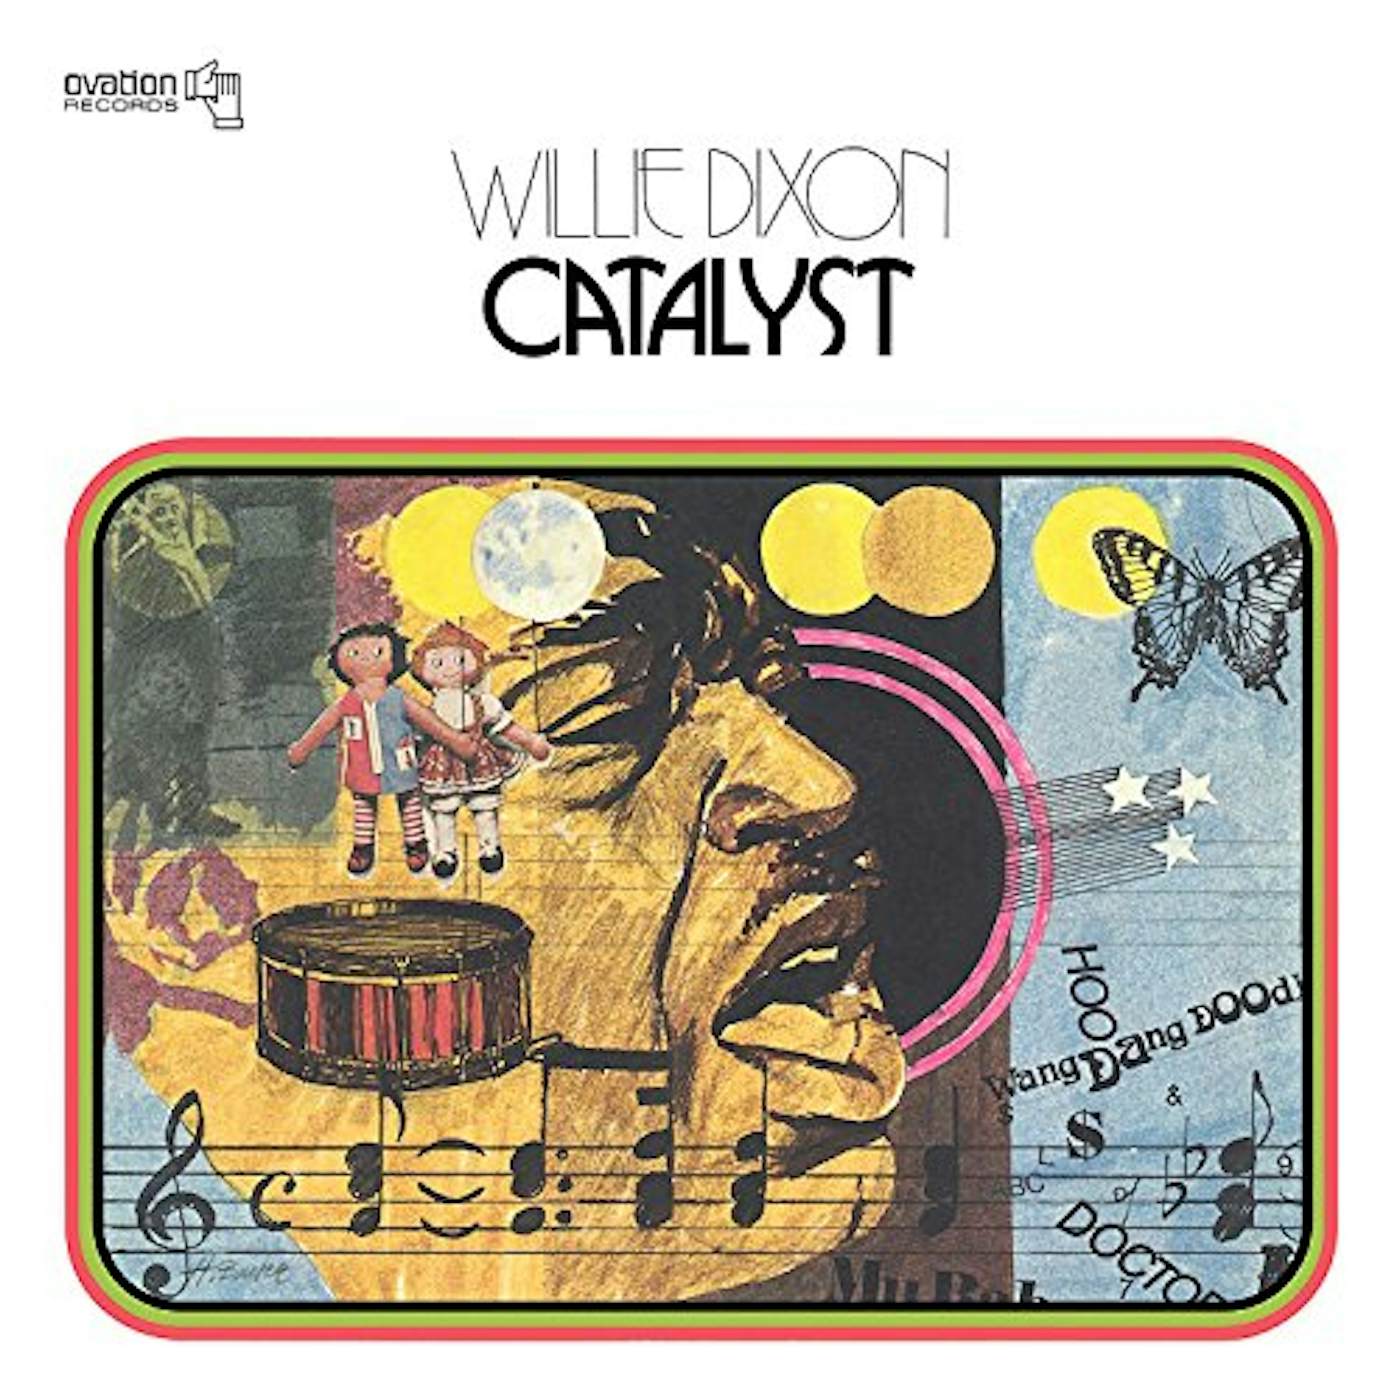 Willie Dixon Catalyst Vinyl Record